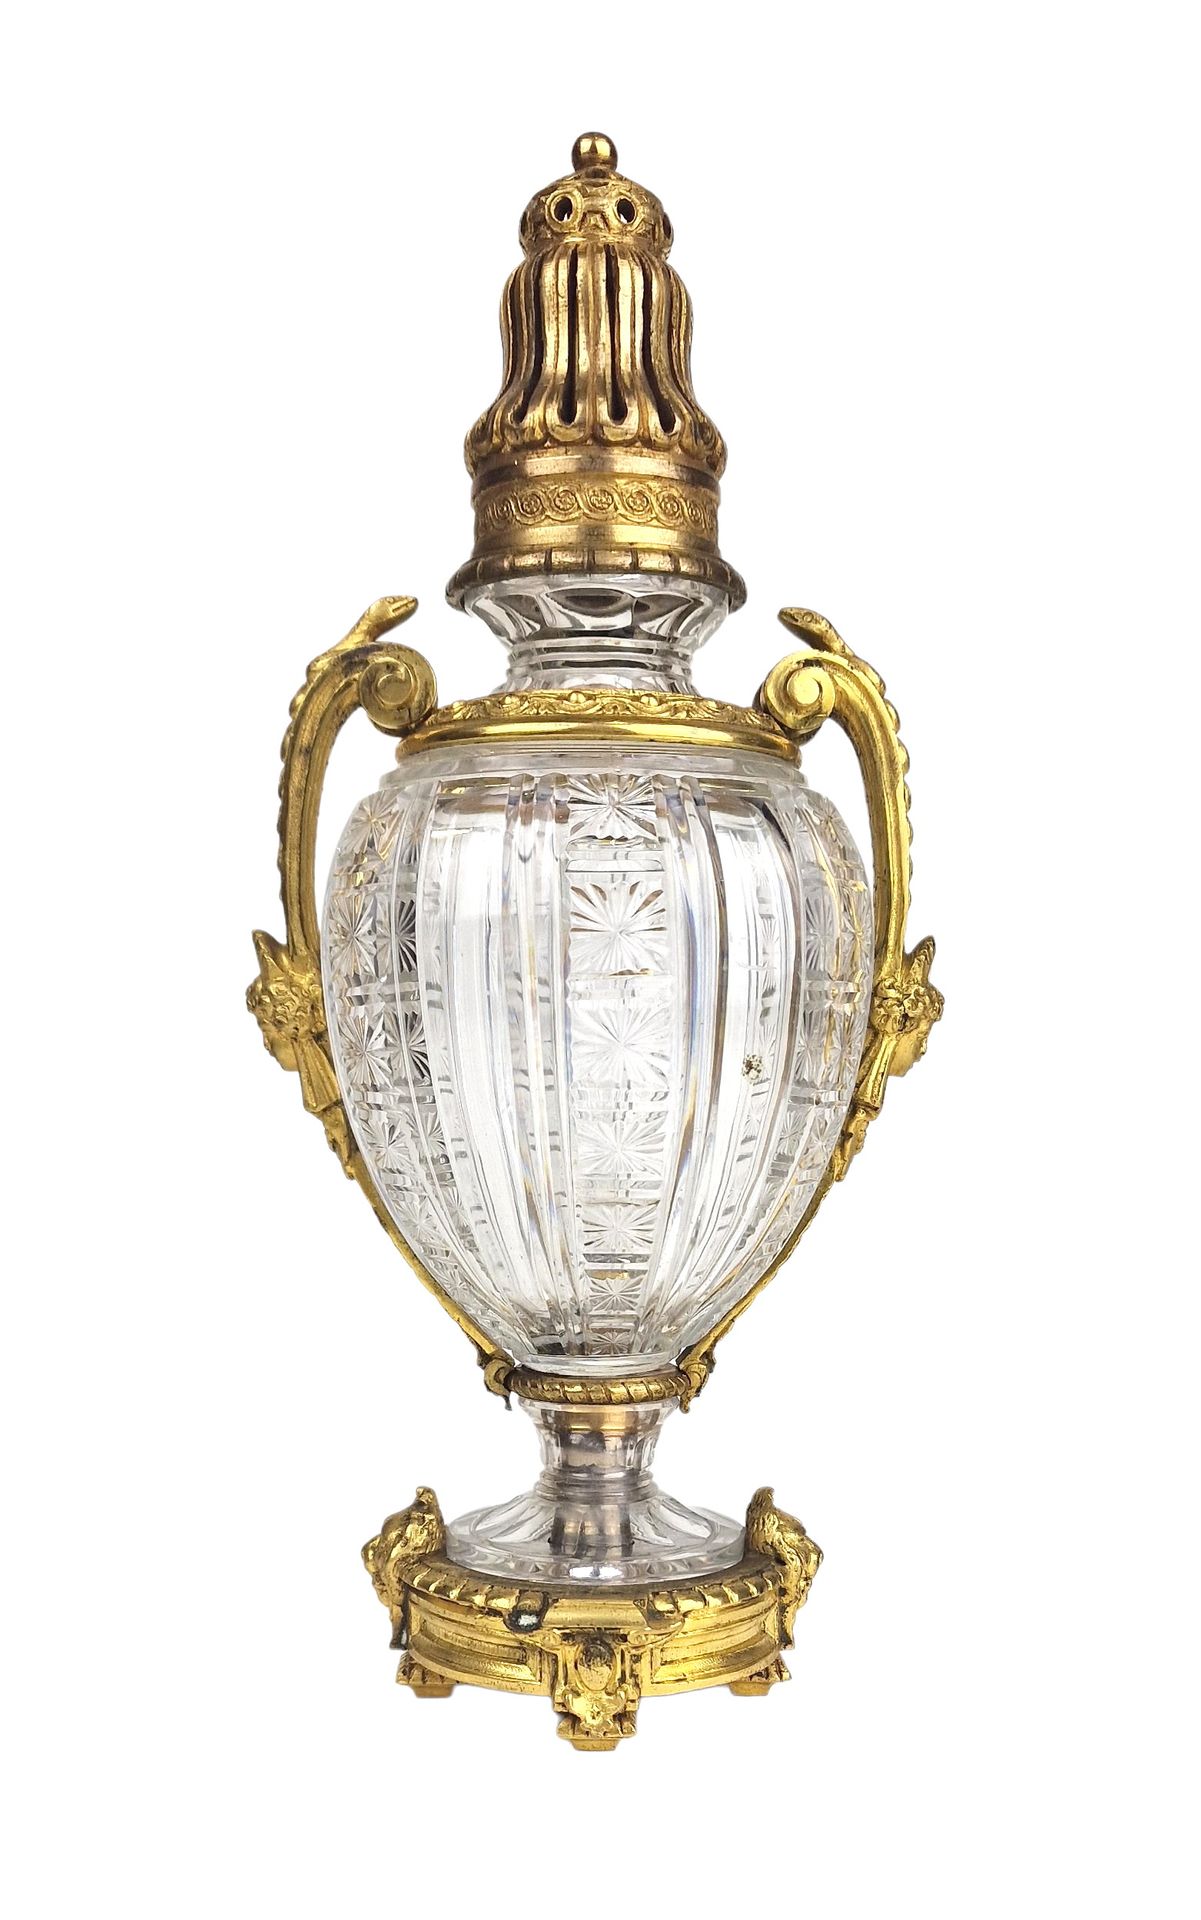 BACCARAT France 优雅的香水燃烧器



水晶，框架为精雕细琢的鎏金铜，手柄为蛇的造型。杯脚上有巴卡拉博物馆的签名。

尺寸：H。22,5 cm